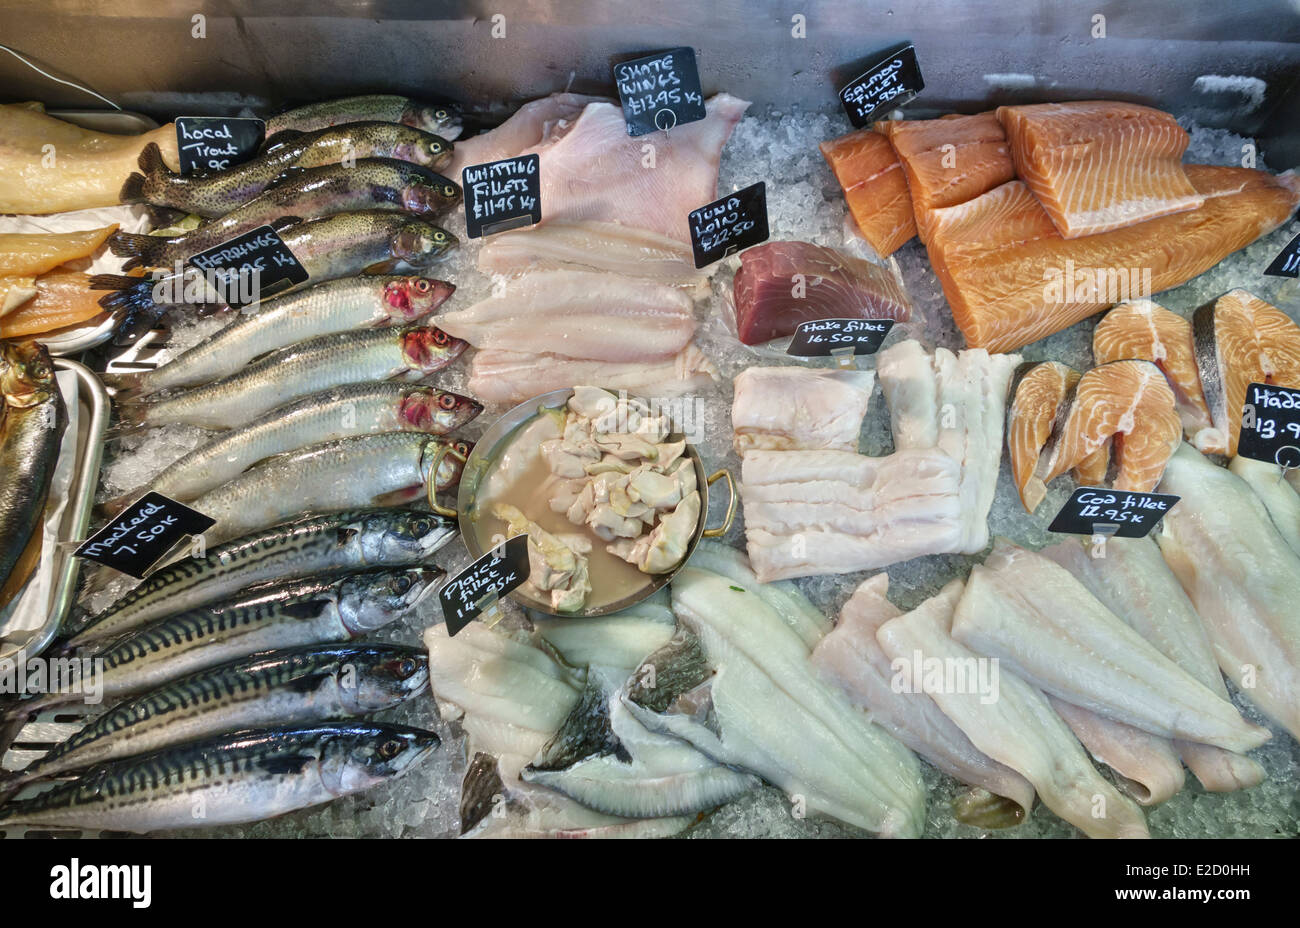 Frischer Fisch zum Verkauf in einen lokalen Fischhändler Shop, Wales, UK - Forelle, Hering, Makrele, Wittling, Lachs, Seehecht und Kabeljau und andere Stockfoto